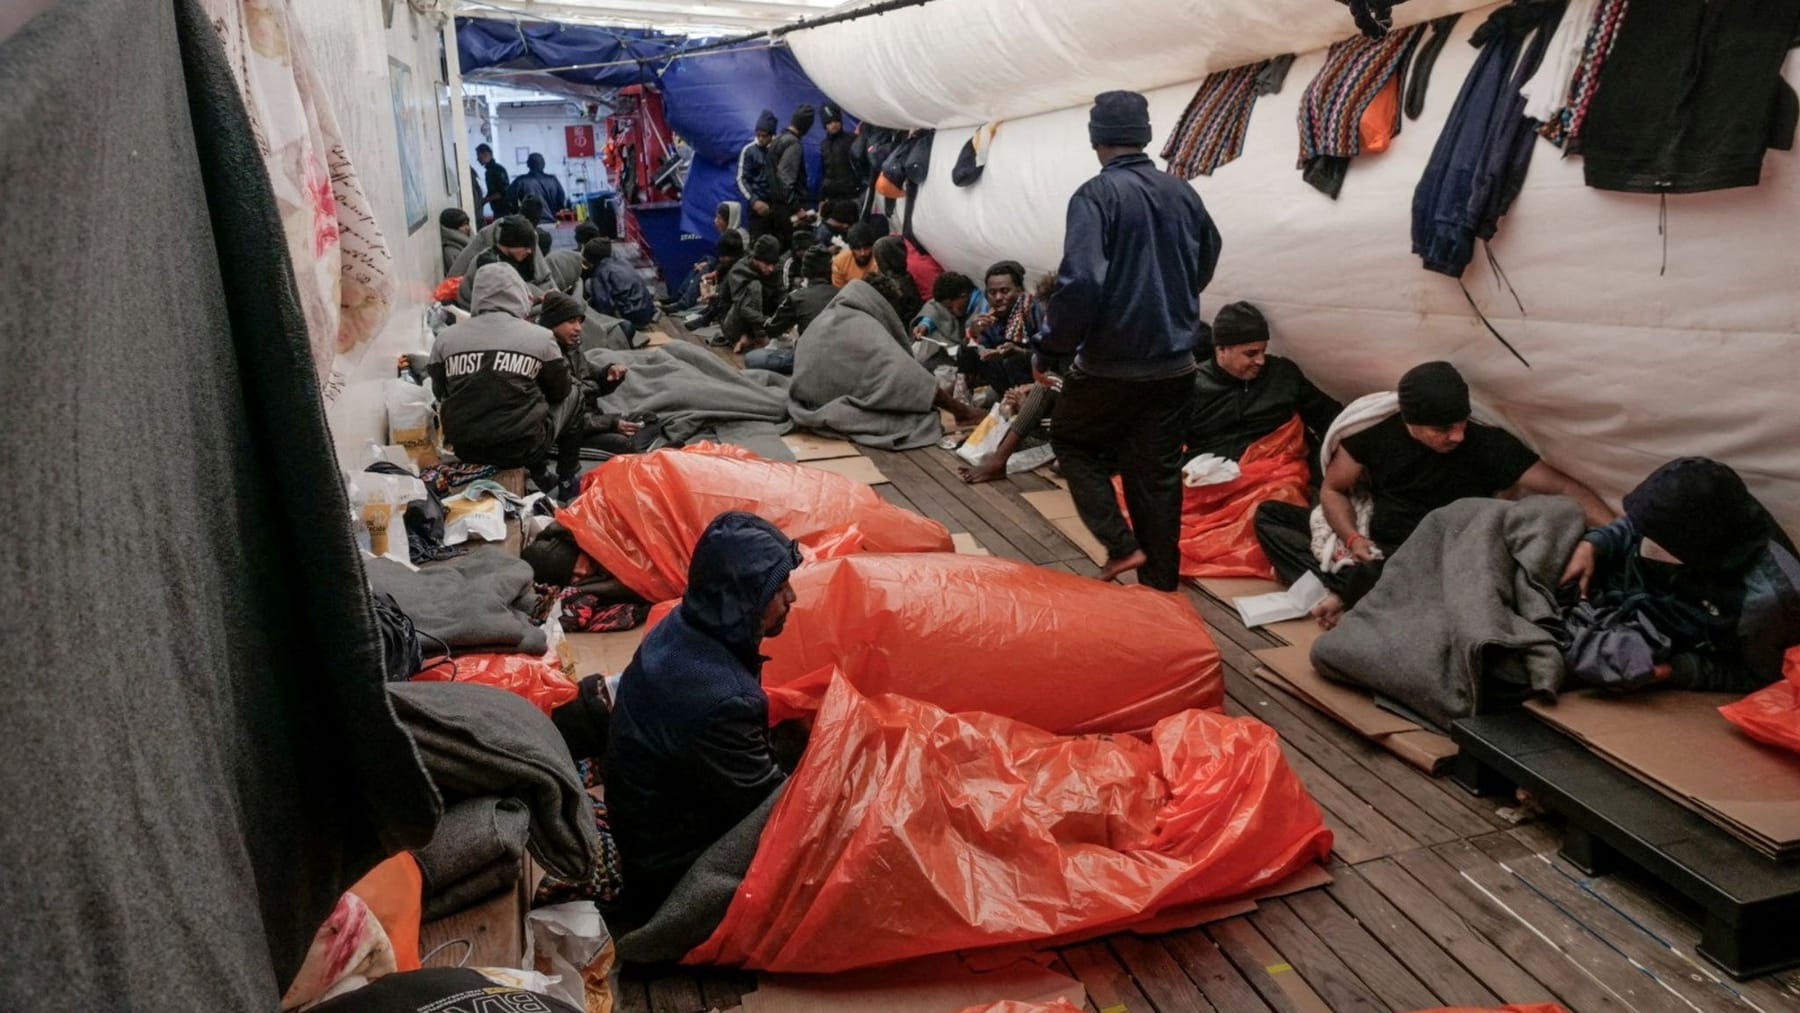 Nave di salvataggio “Ocean Viking” autorizzata ad attraccare in Francia – Italia rifiutata